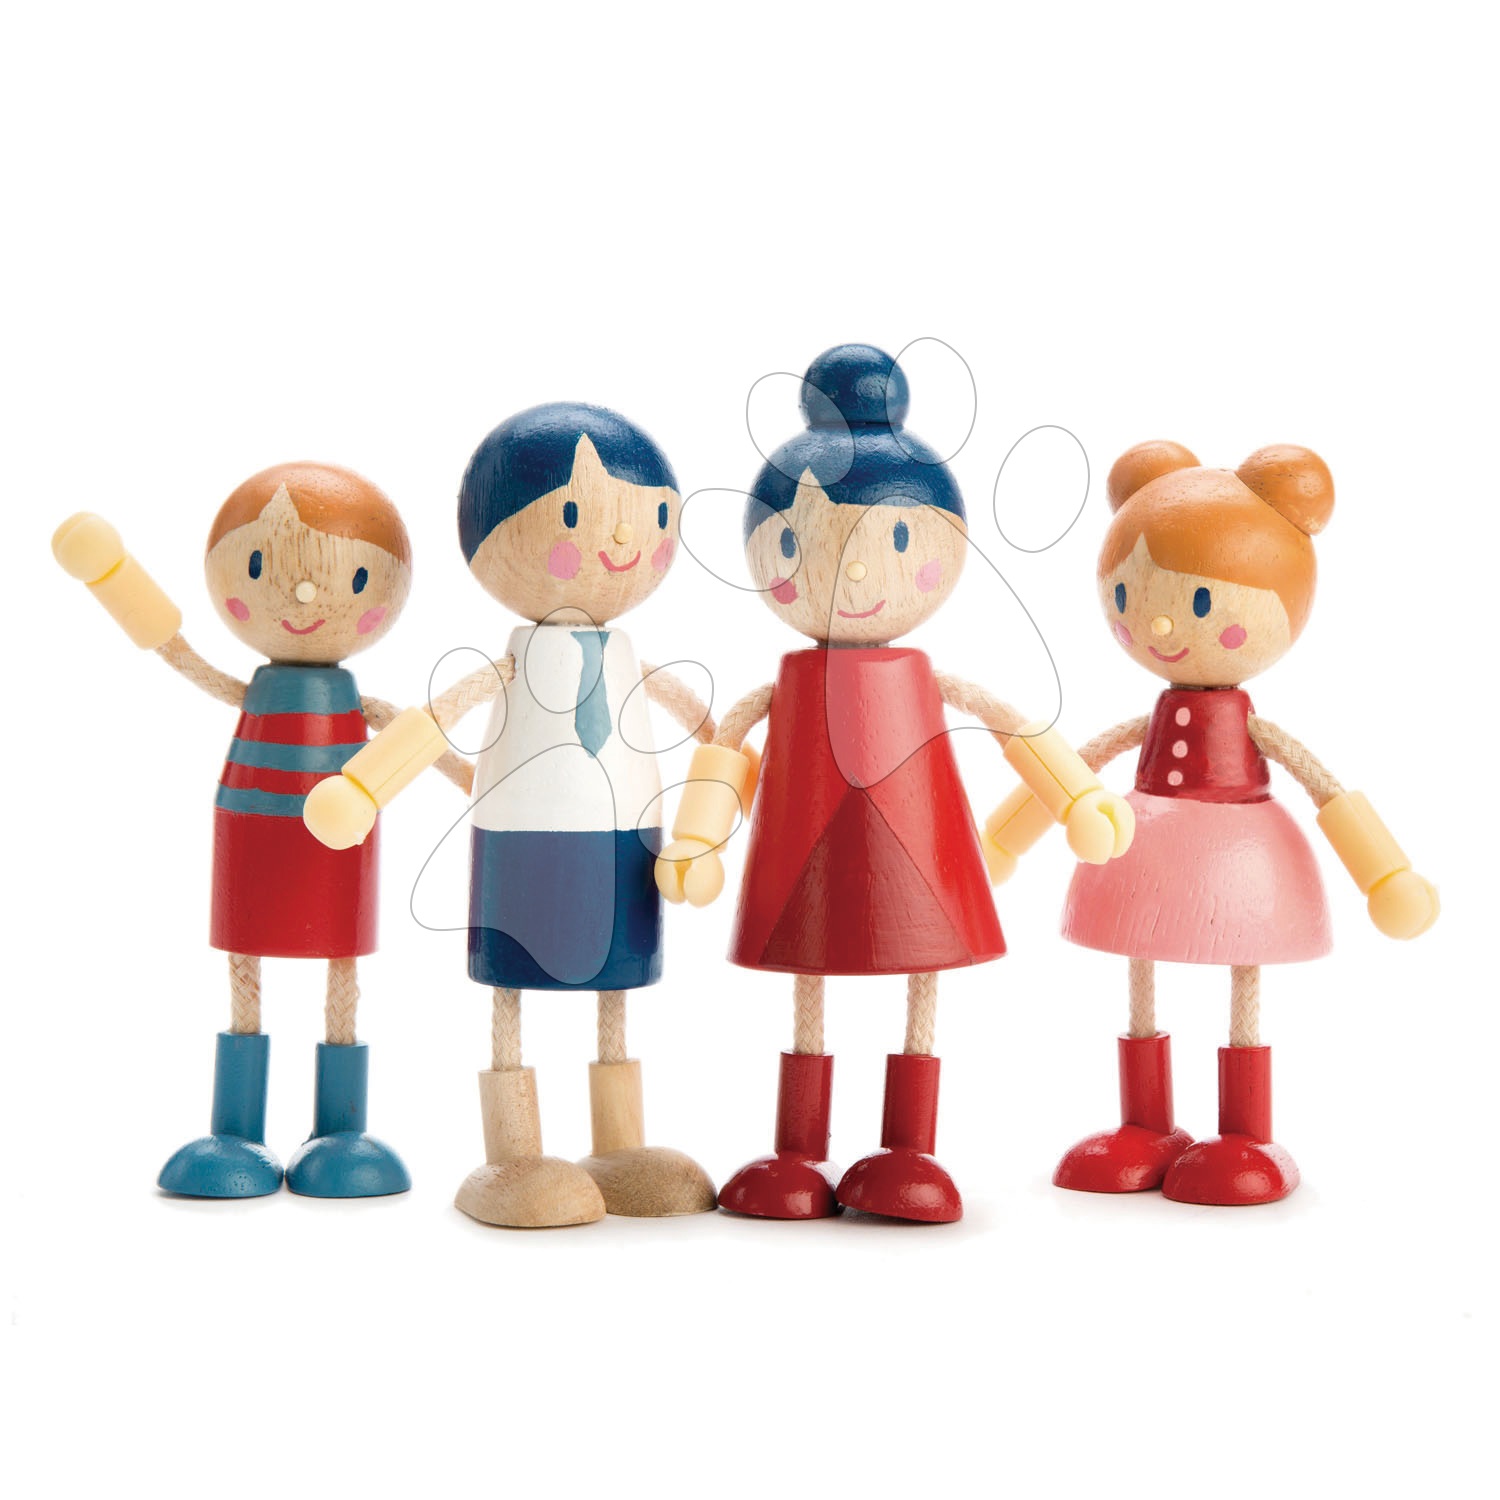 Drevená rodina 4 postavičky Doll Family Tender Leaf Toys s pohyblivými rukami a nohami